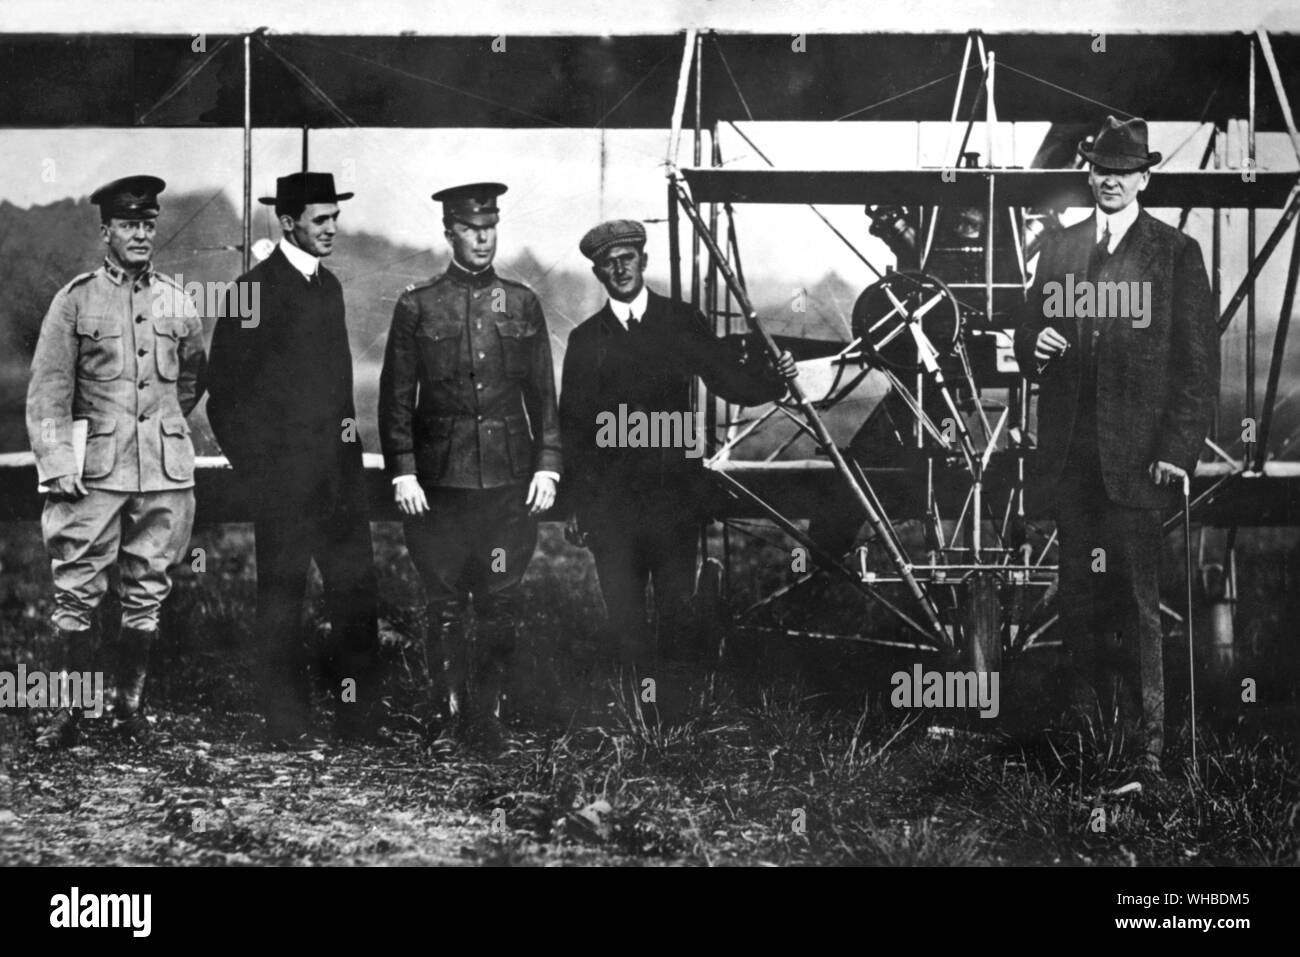 Grahm - Arnold - Krämer - Beachy - Moore - Die weltweit erste Air Force mit ersten militärischen Flugzeuge der Welt 1909. Stockfoto